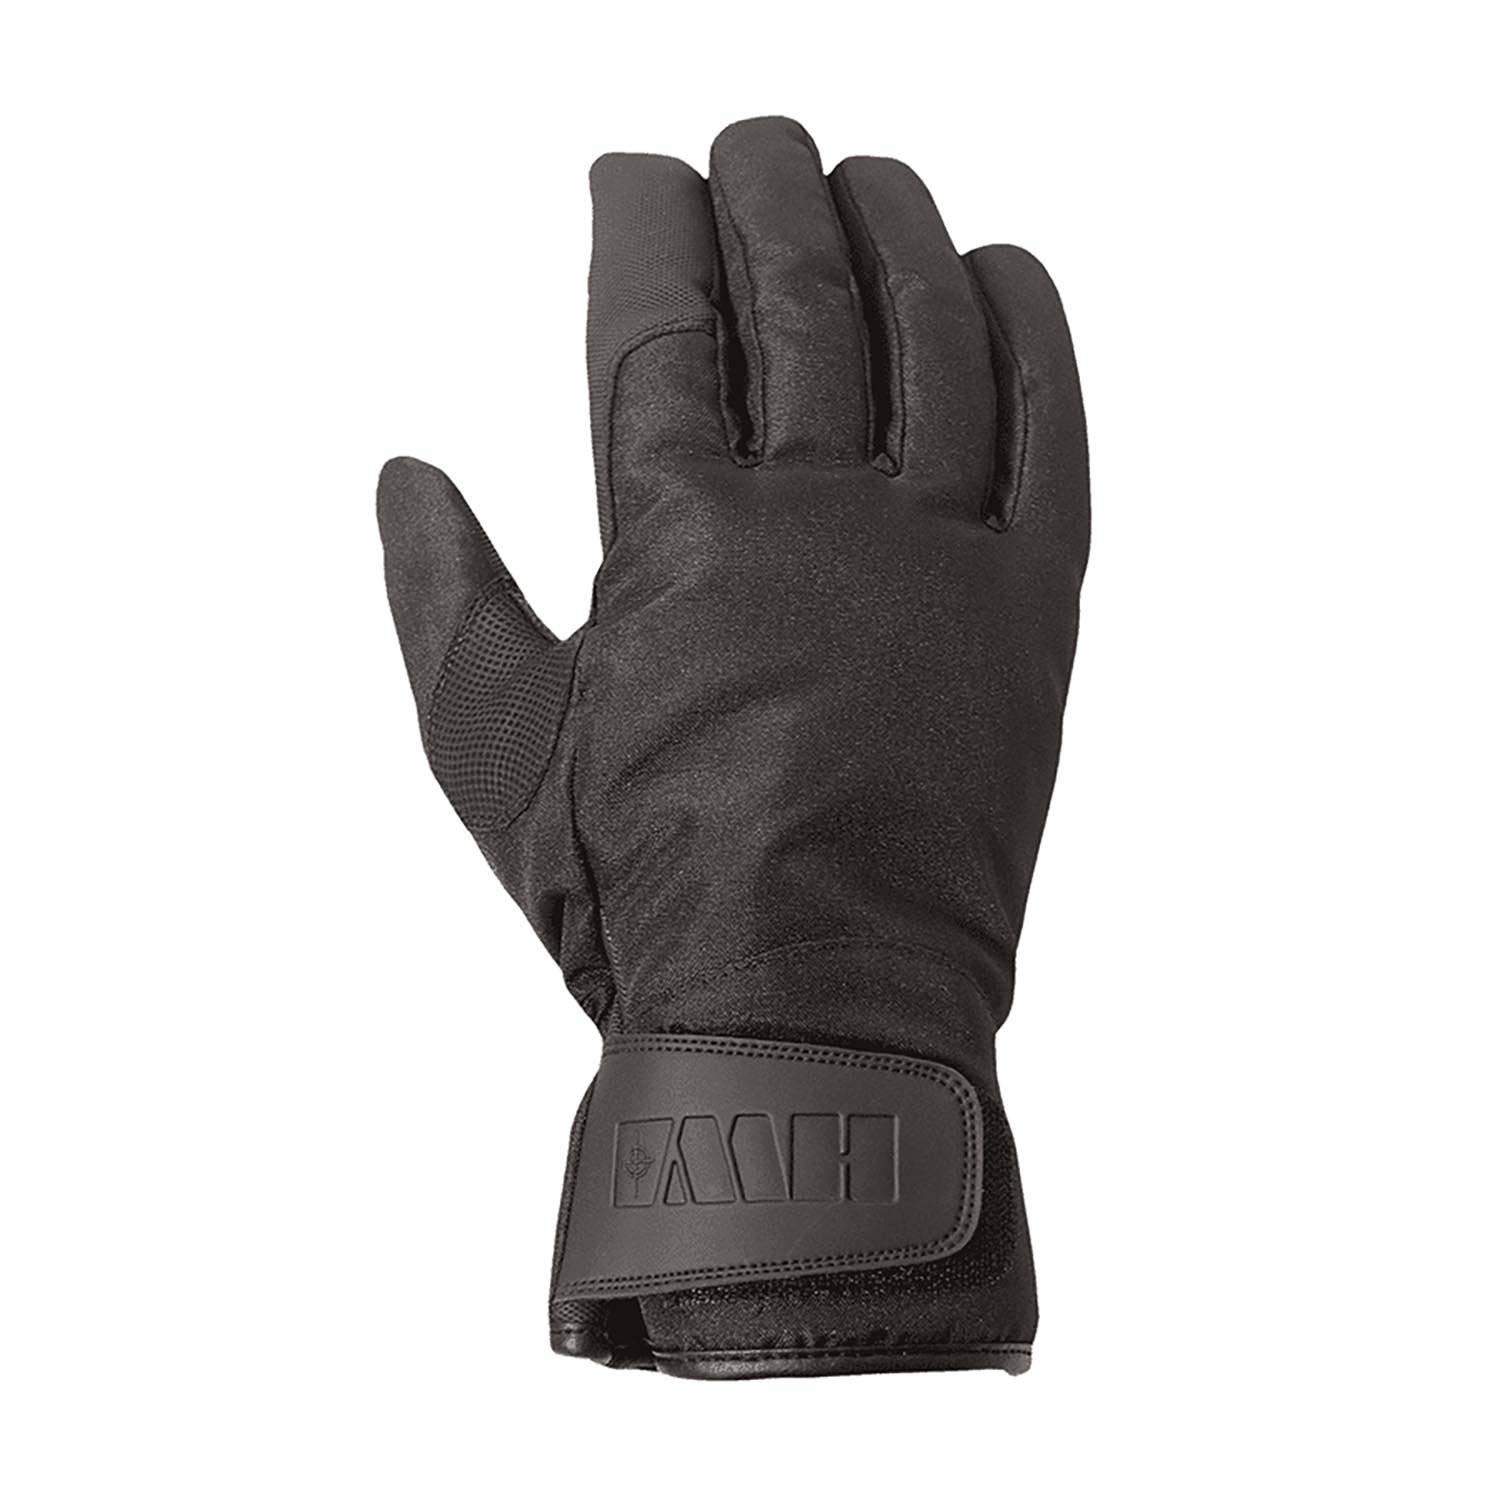 HWI Long Gauntlet Cold Weather Duty Gloves